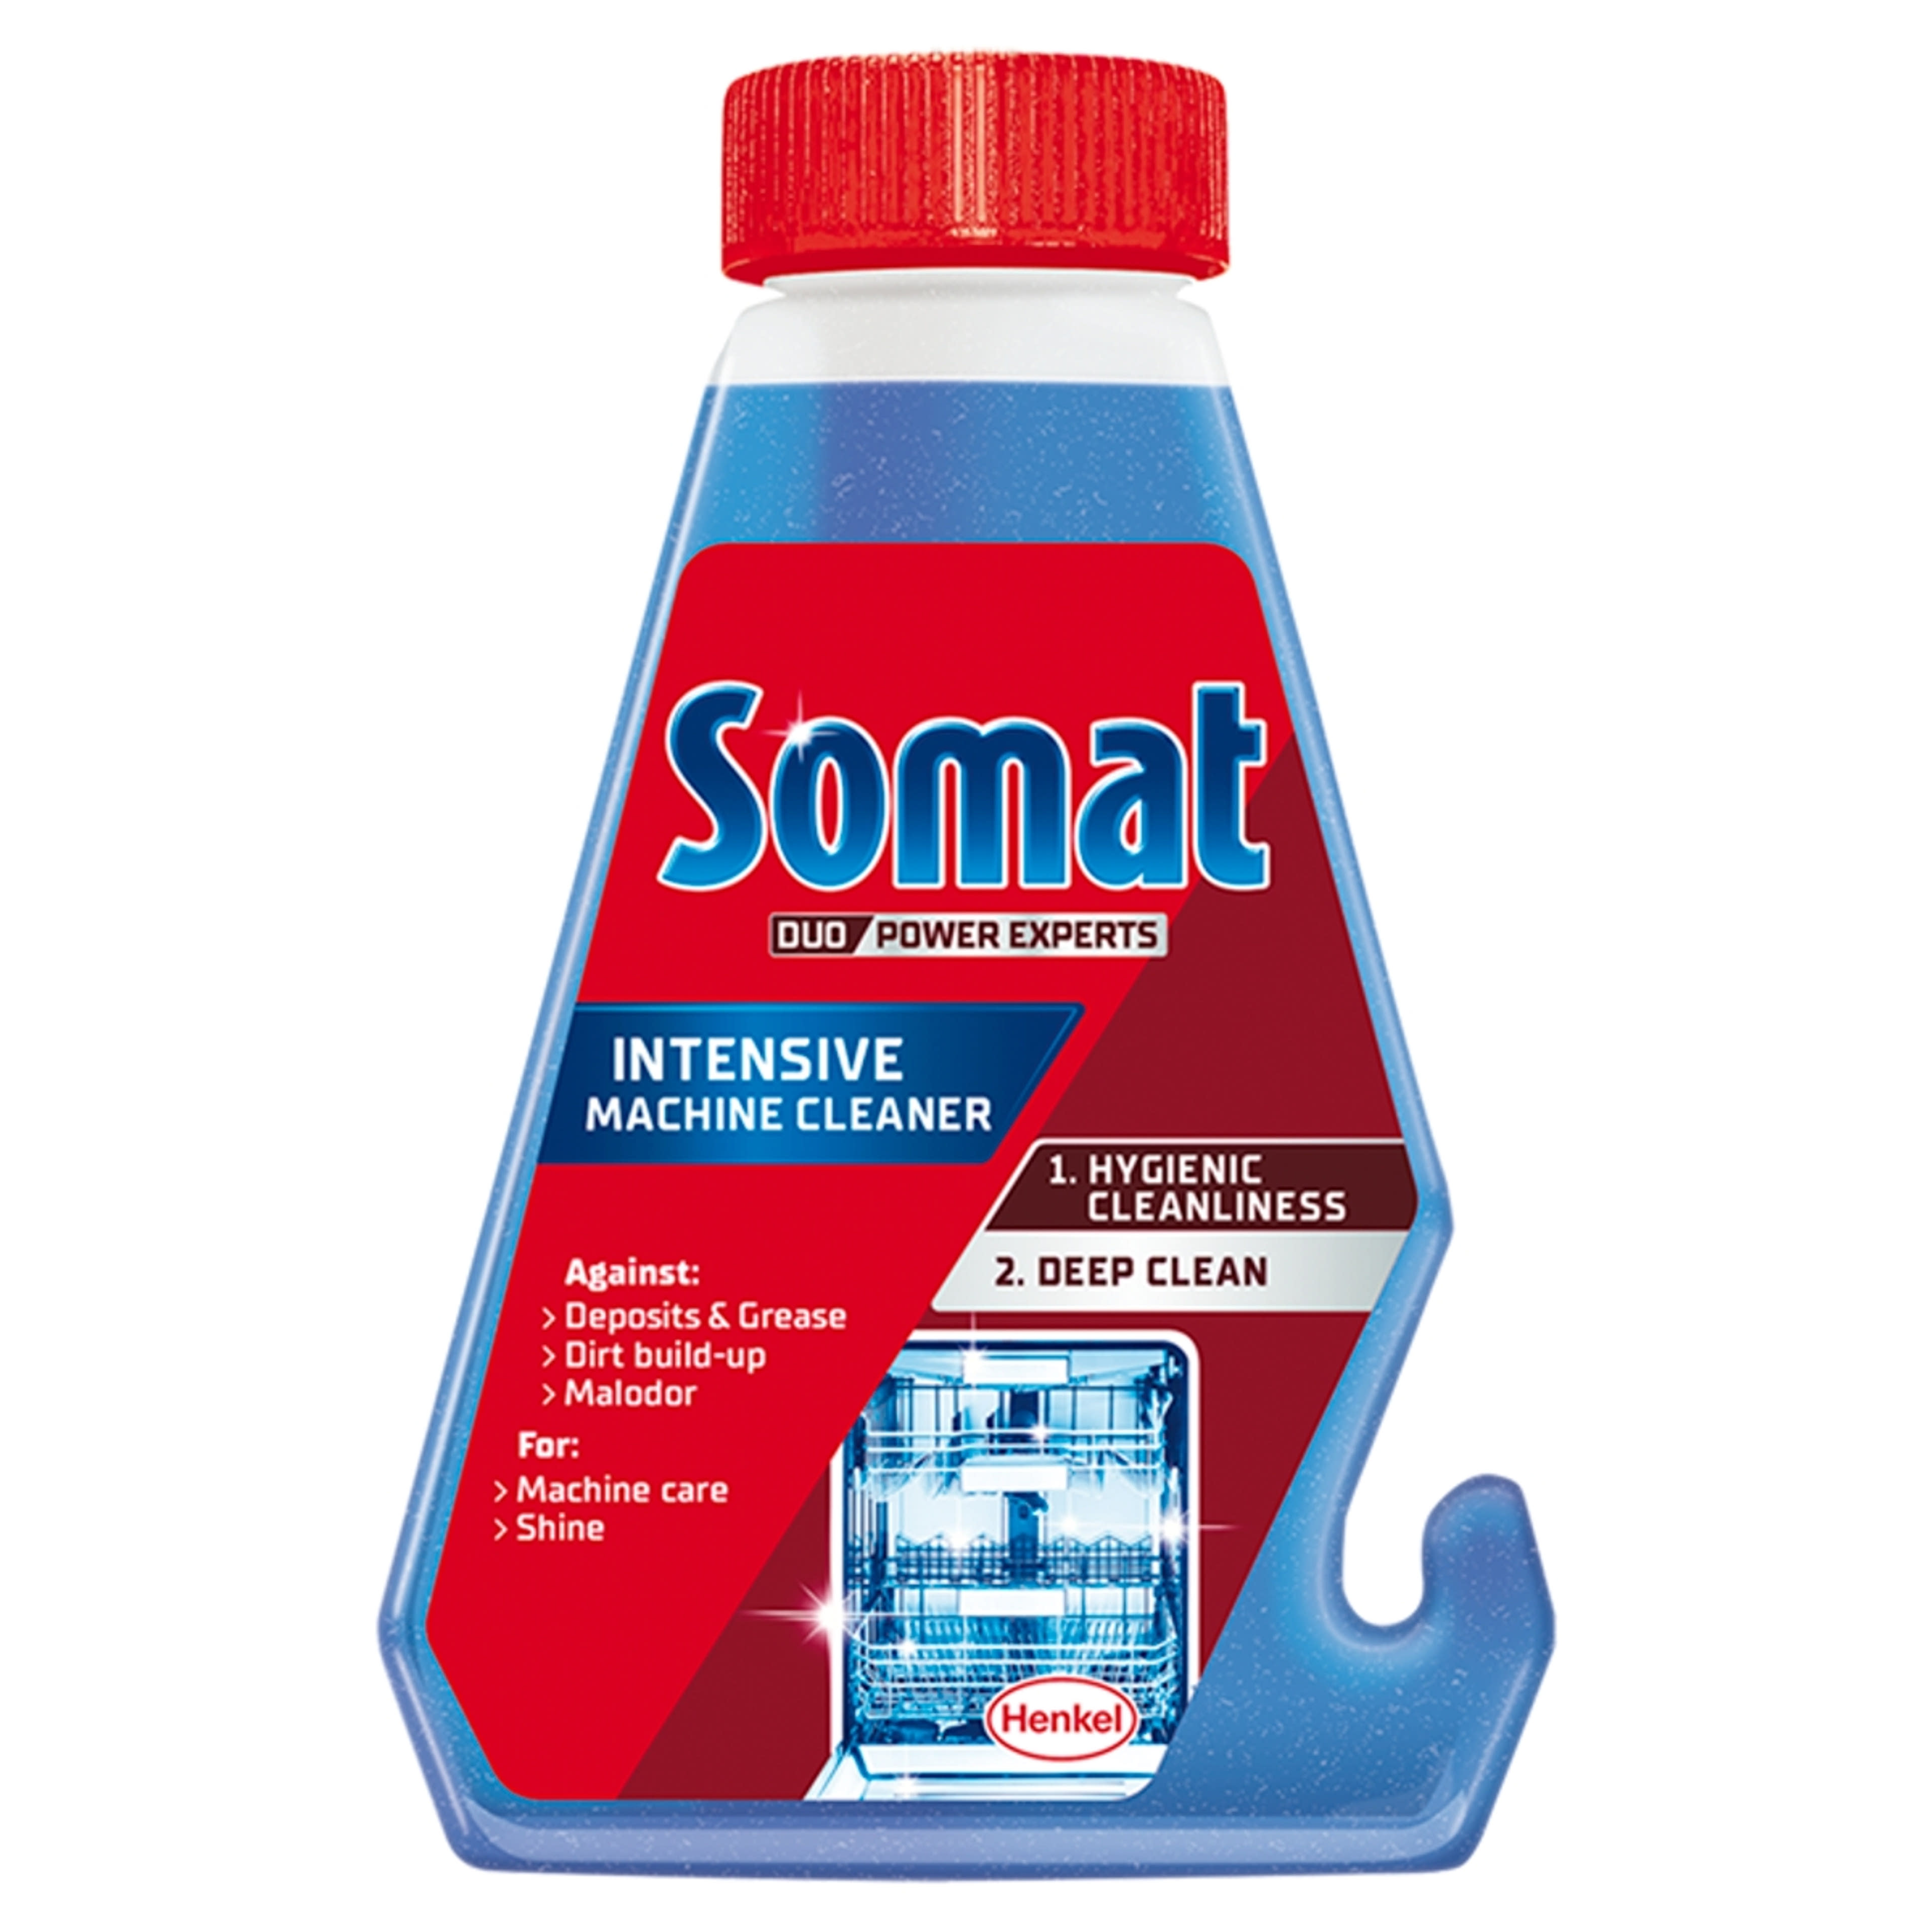 Somat Duo Power Experts mosogatógép tisztító - 250 ml